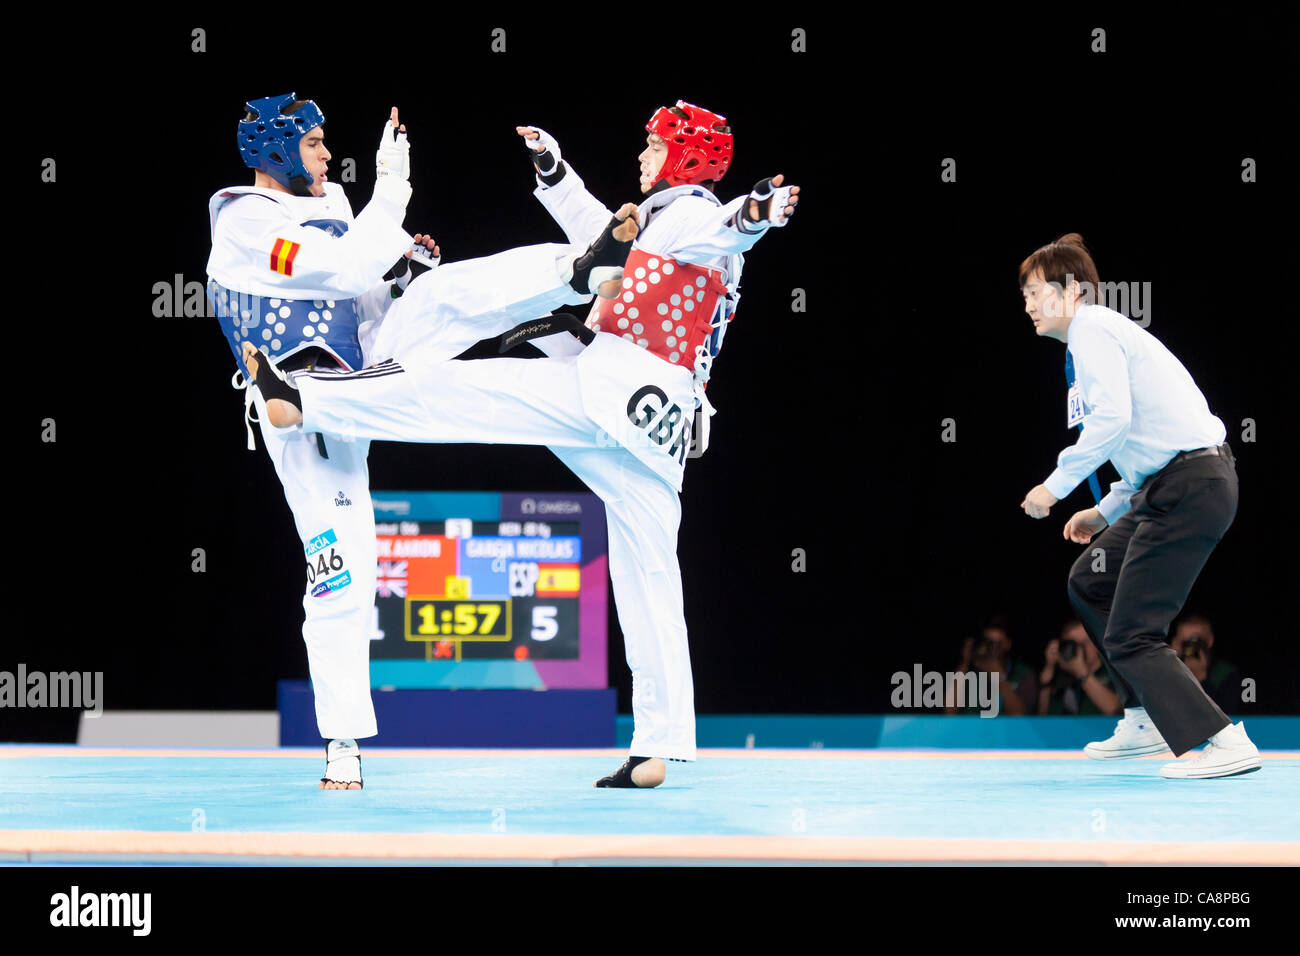 Aaron COOK (GBR) et Nicolas GARCIA (ESP) qui se font concurrence sur les hommes -80 kg Londres prépare invitation Internationale de Taekwondo test event, 3-4 décembre 2011 à l'ExCel. Banque D'Images